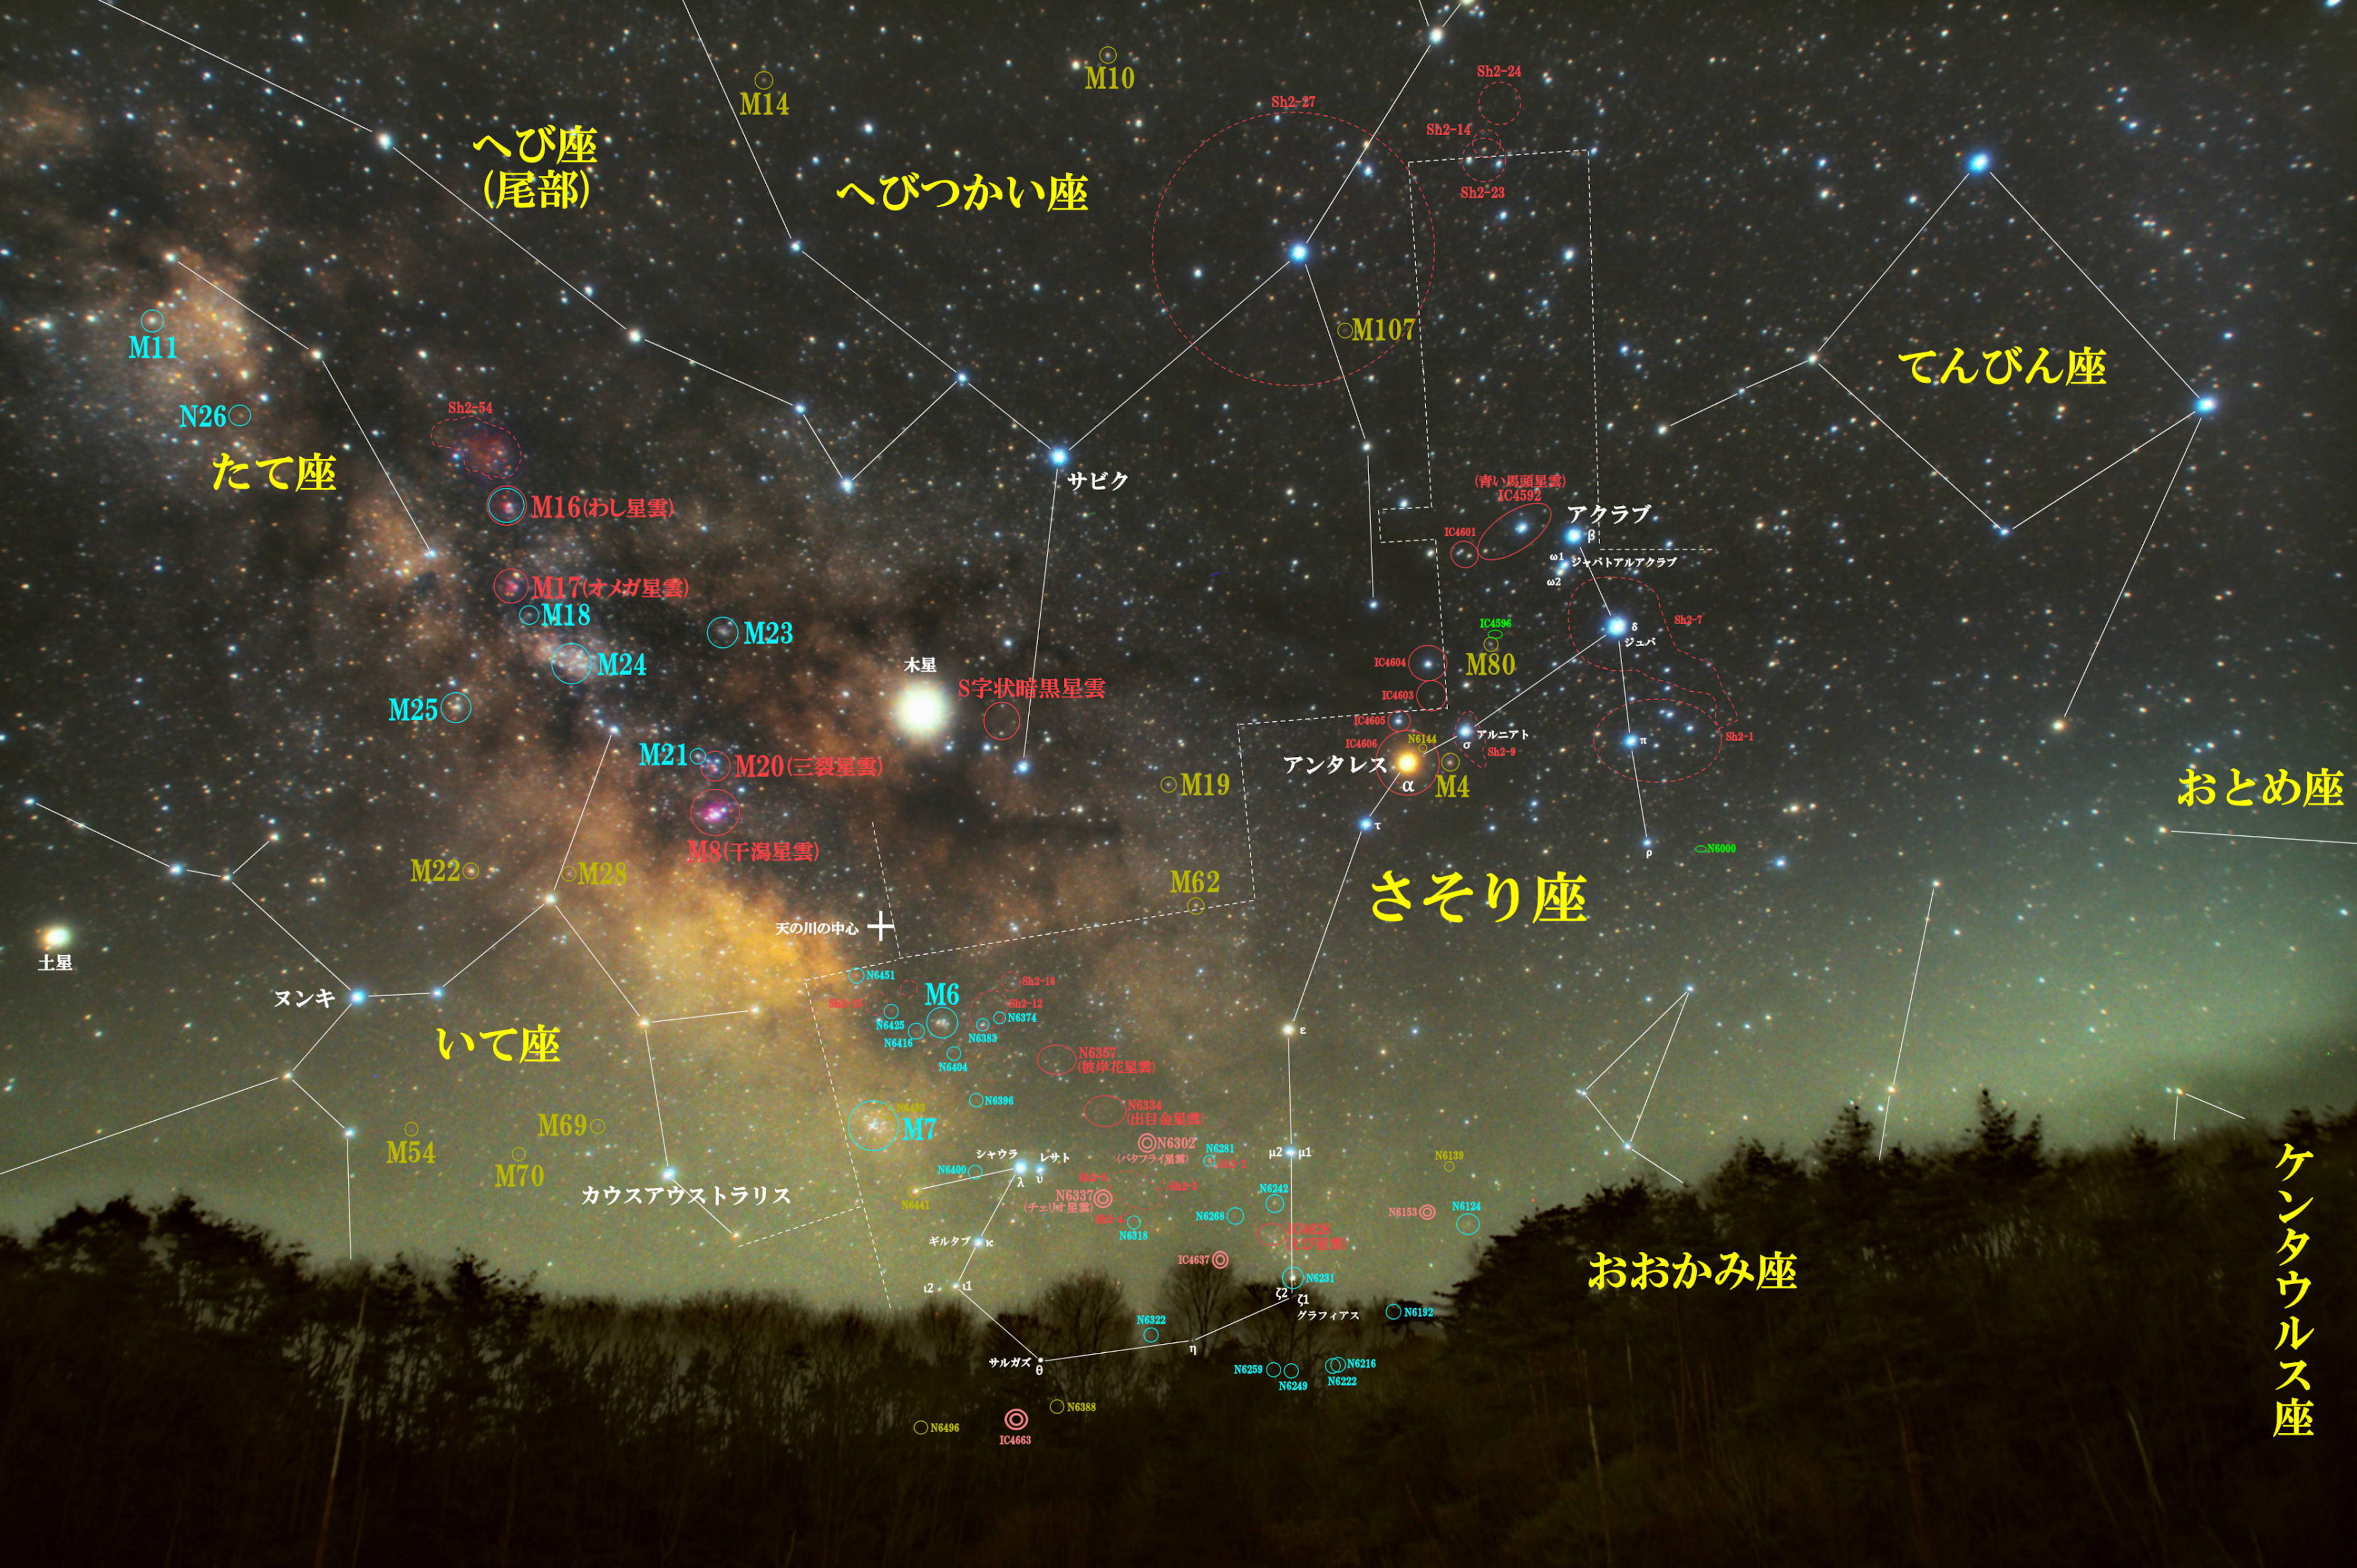 さそり座 星座 春夏秋冬別の星野 星景 星空写真と星図